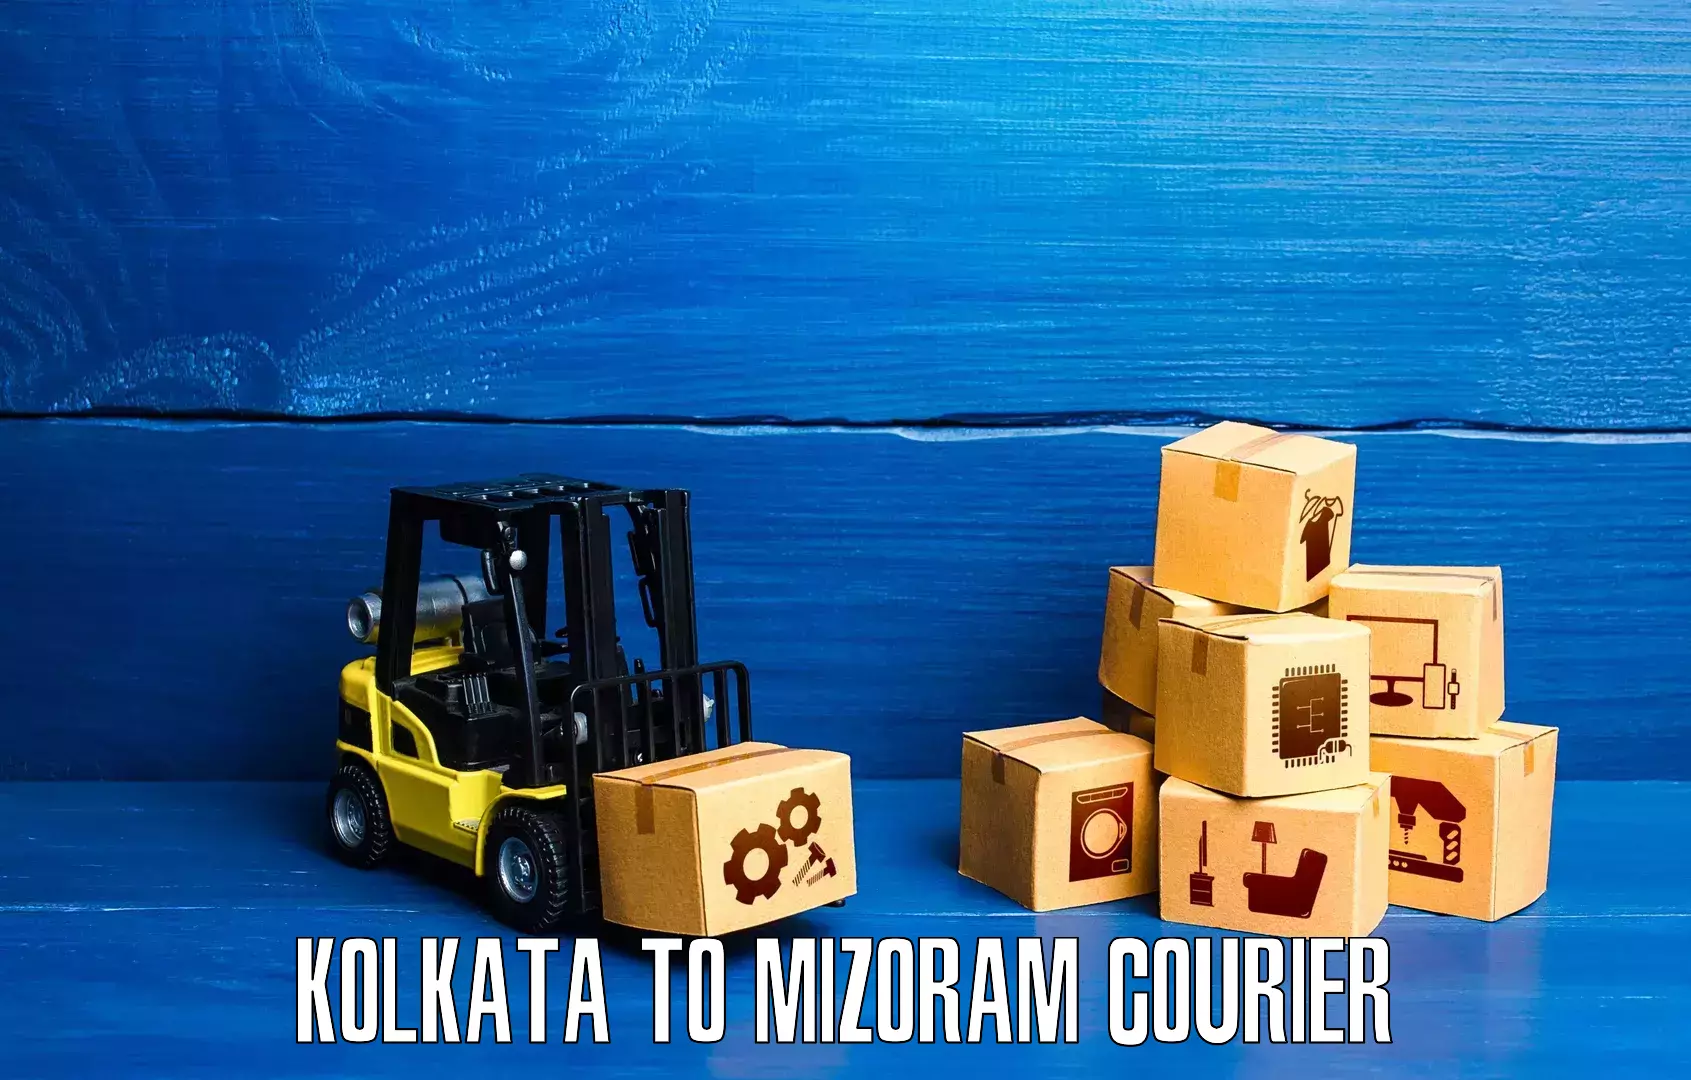 Personal parcel delivery in Kolkata to Mizoram